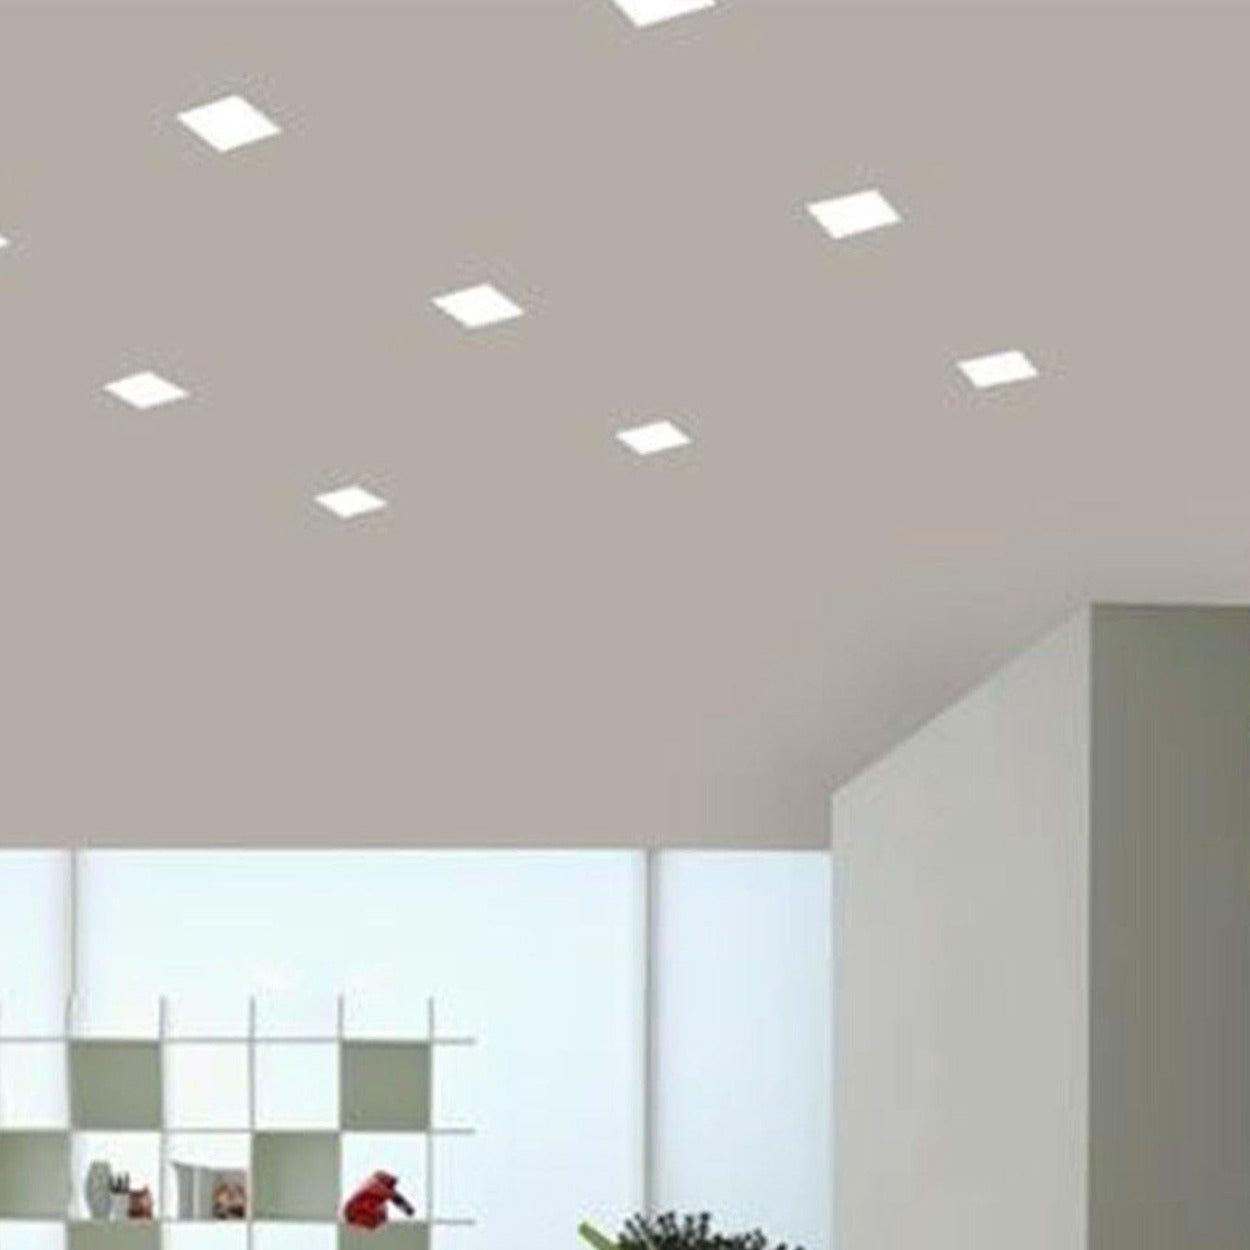 ANKUR MINI REXX SQUARE 9W LED PANEL LIGHT - Ankur Lighting